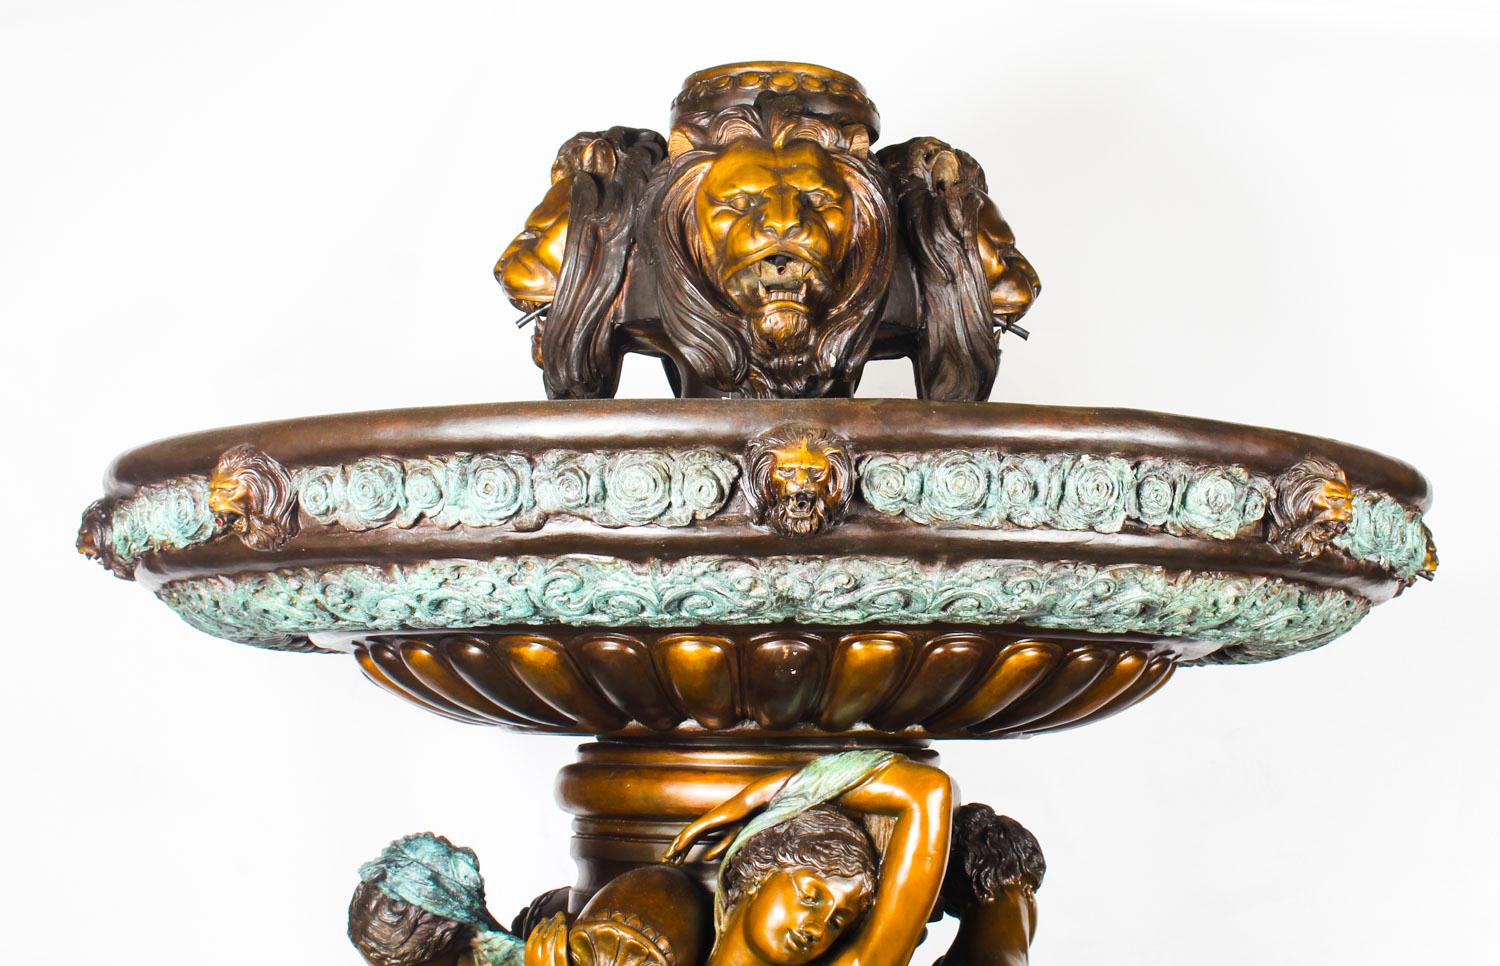 Il s'agit d'une fontaine italienne monumentale à deux niveaux, sculptée en bronze dans le style néoclassique, datant de la fin du XXe siècle.
 
Cette formidable fontaine fait jaillir l'eau du sommet, des vases tenus par les jeunes filles et de